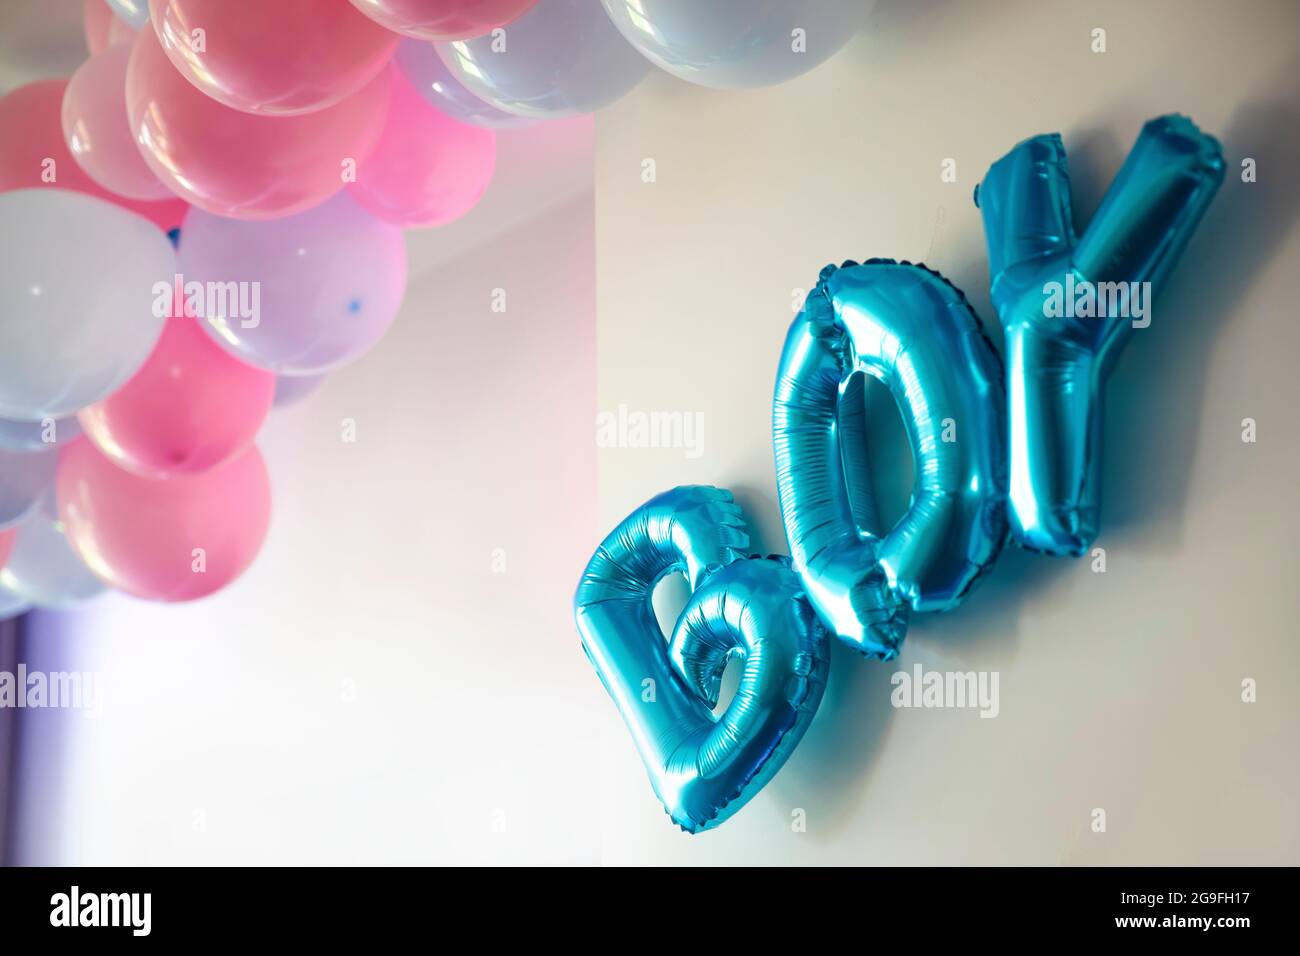 Geschlecht zeigen Party blauen und rosa Ballons im Wohnzimmer auf weißen Wand Definition eines Jungen oder Mädchen, Sammlung Party Dekoration Stockfoto